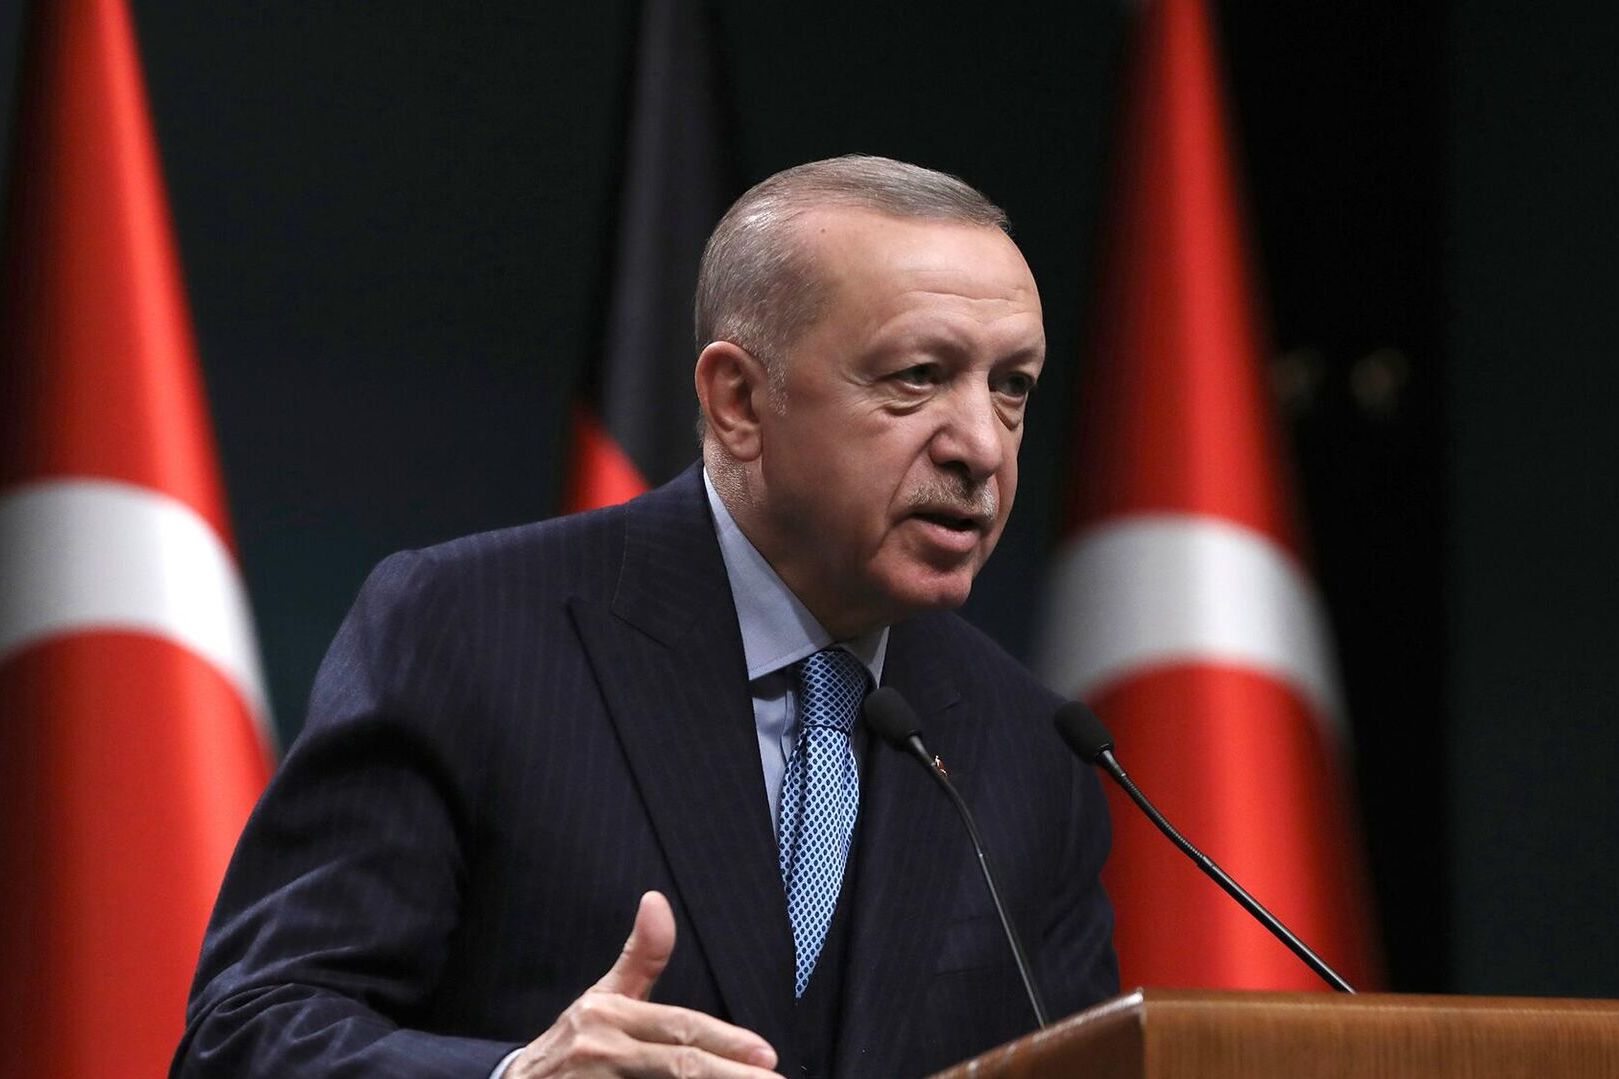 Эрдоган: Европа сможет получать российский газ через Турцию